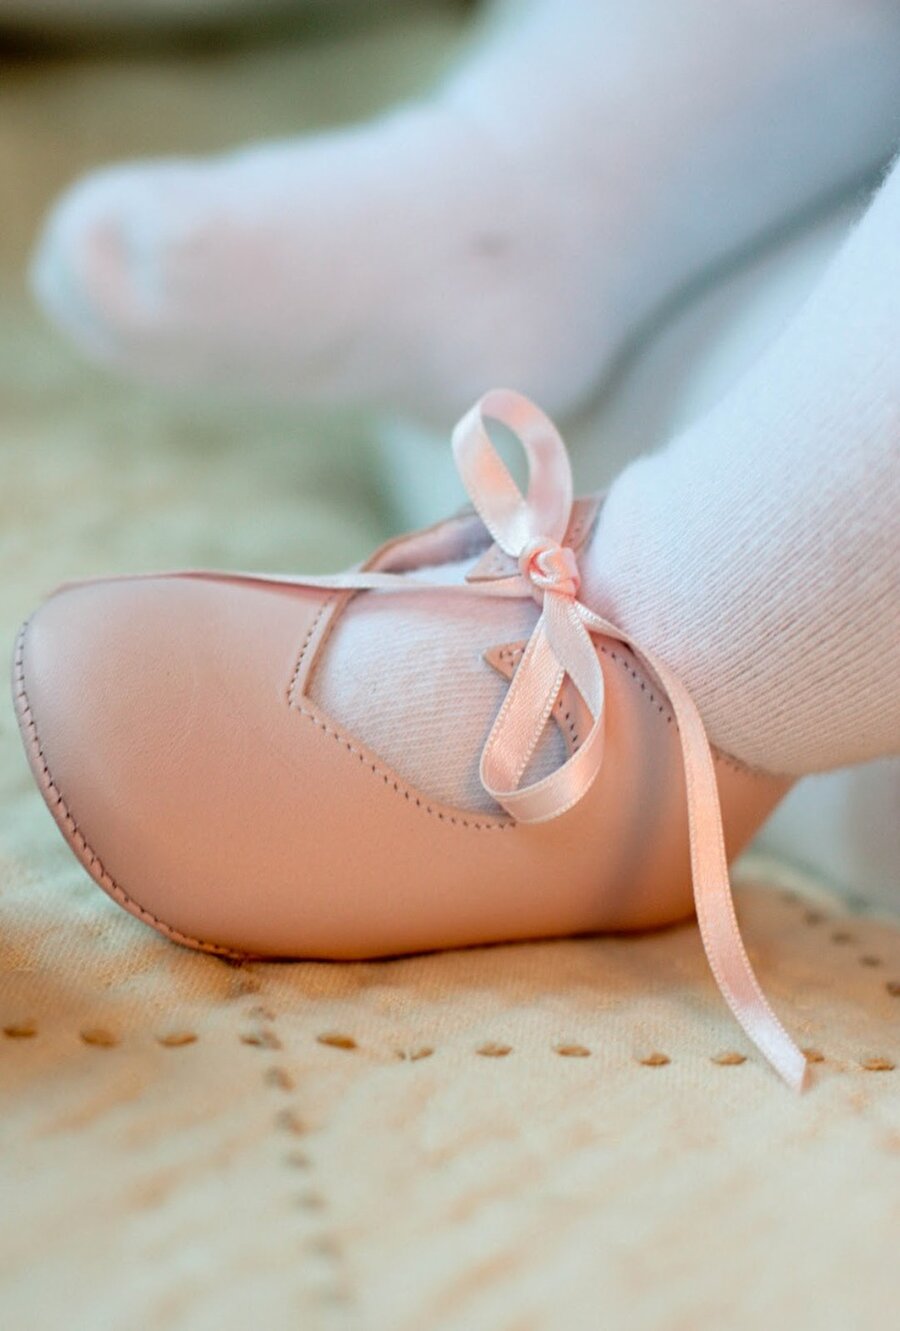 Birçok ürün var
Son yıllarda bebekler için birçok mağazada bulunabilen ilk adım ayakkabıları satılıyor. Ancak bu ayakkabıların da tonla çeşidi ve markası bulunuyor.